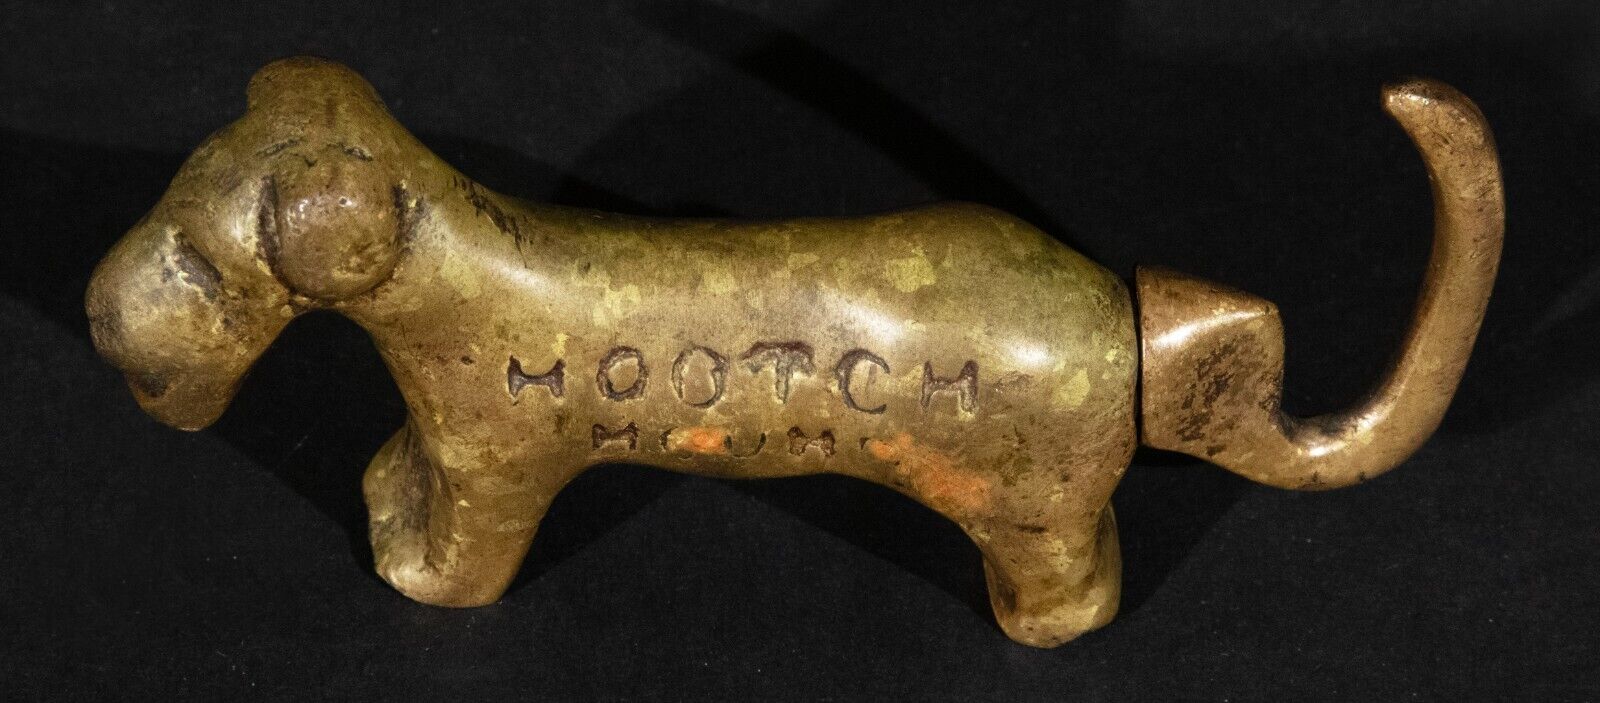 Hootch Hound Brass Corkscrew Prohibition Era Weidlich Brothers Manufacturing